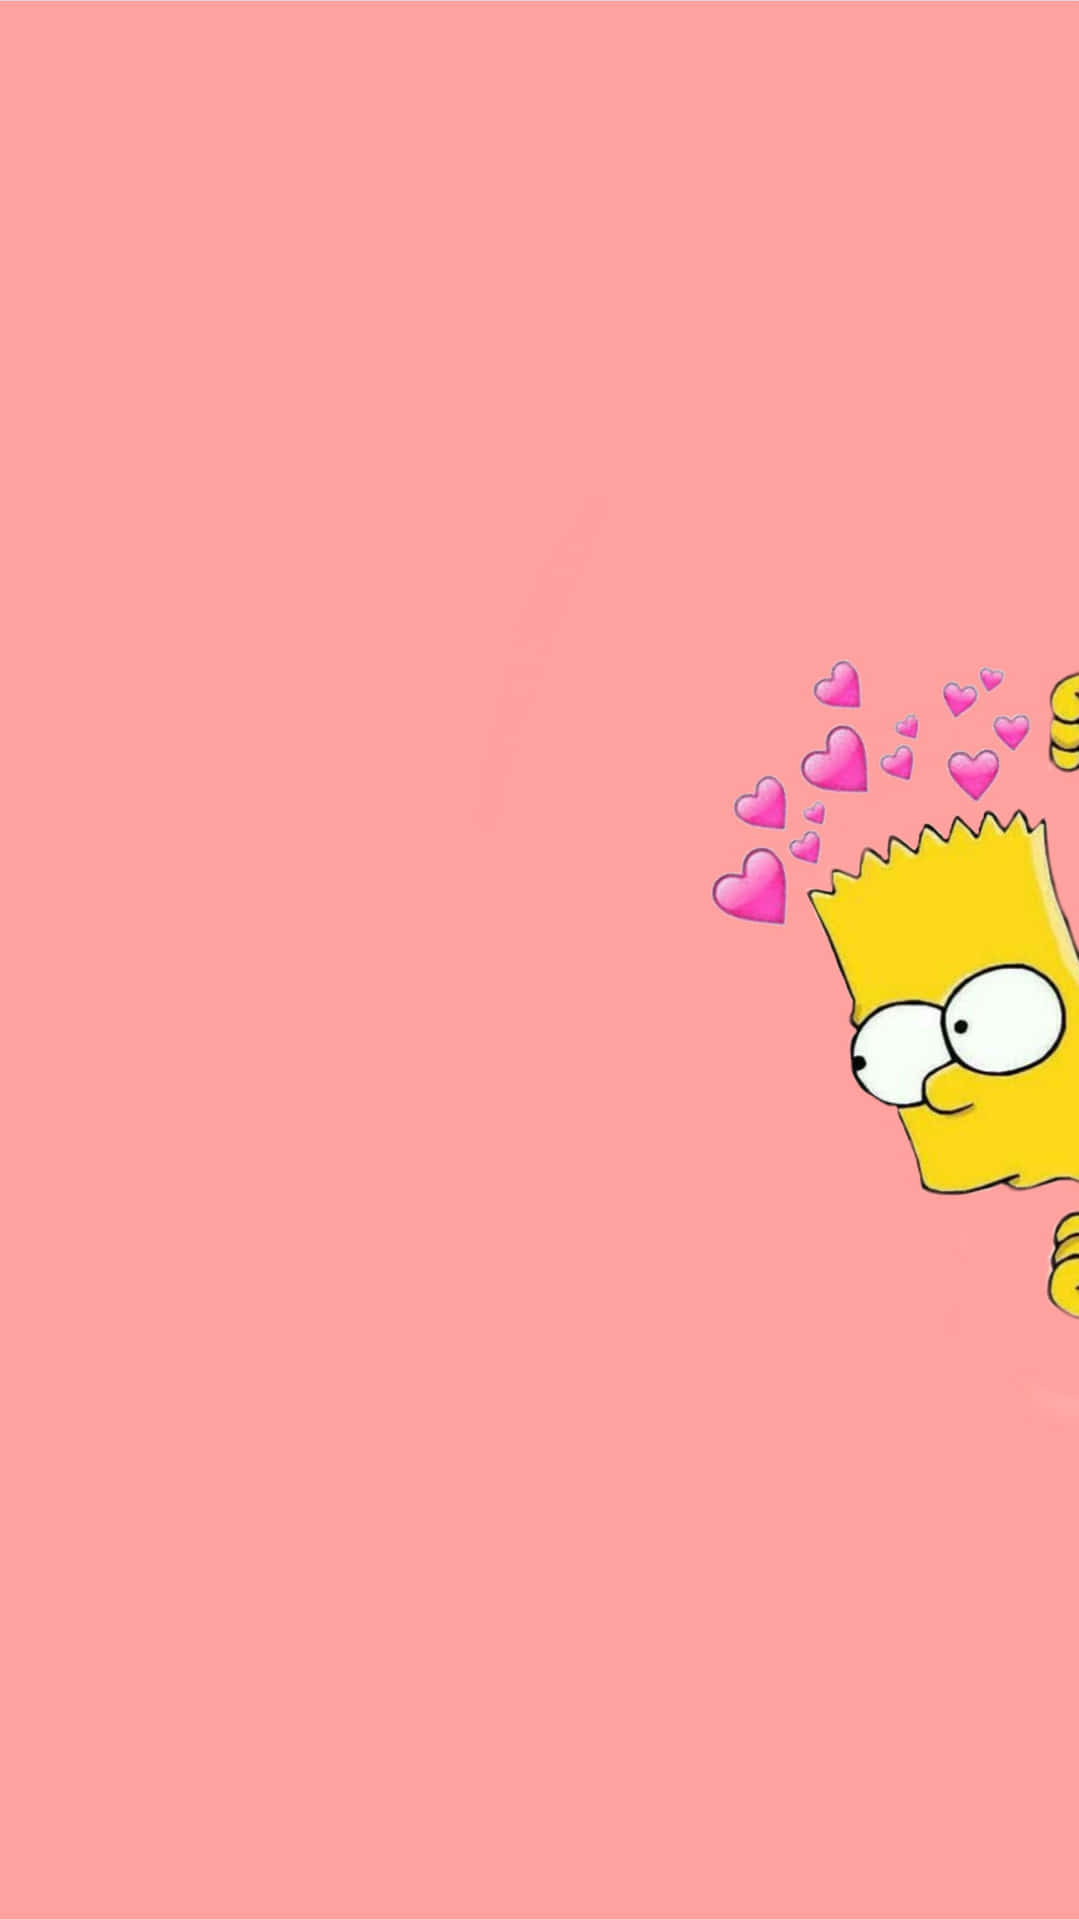 Adicioneum Pouco De Diversão À Sua Casa Com O Icônico Personagem Bart Simpson Do Saturday Night Live. Papel de Parede